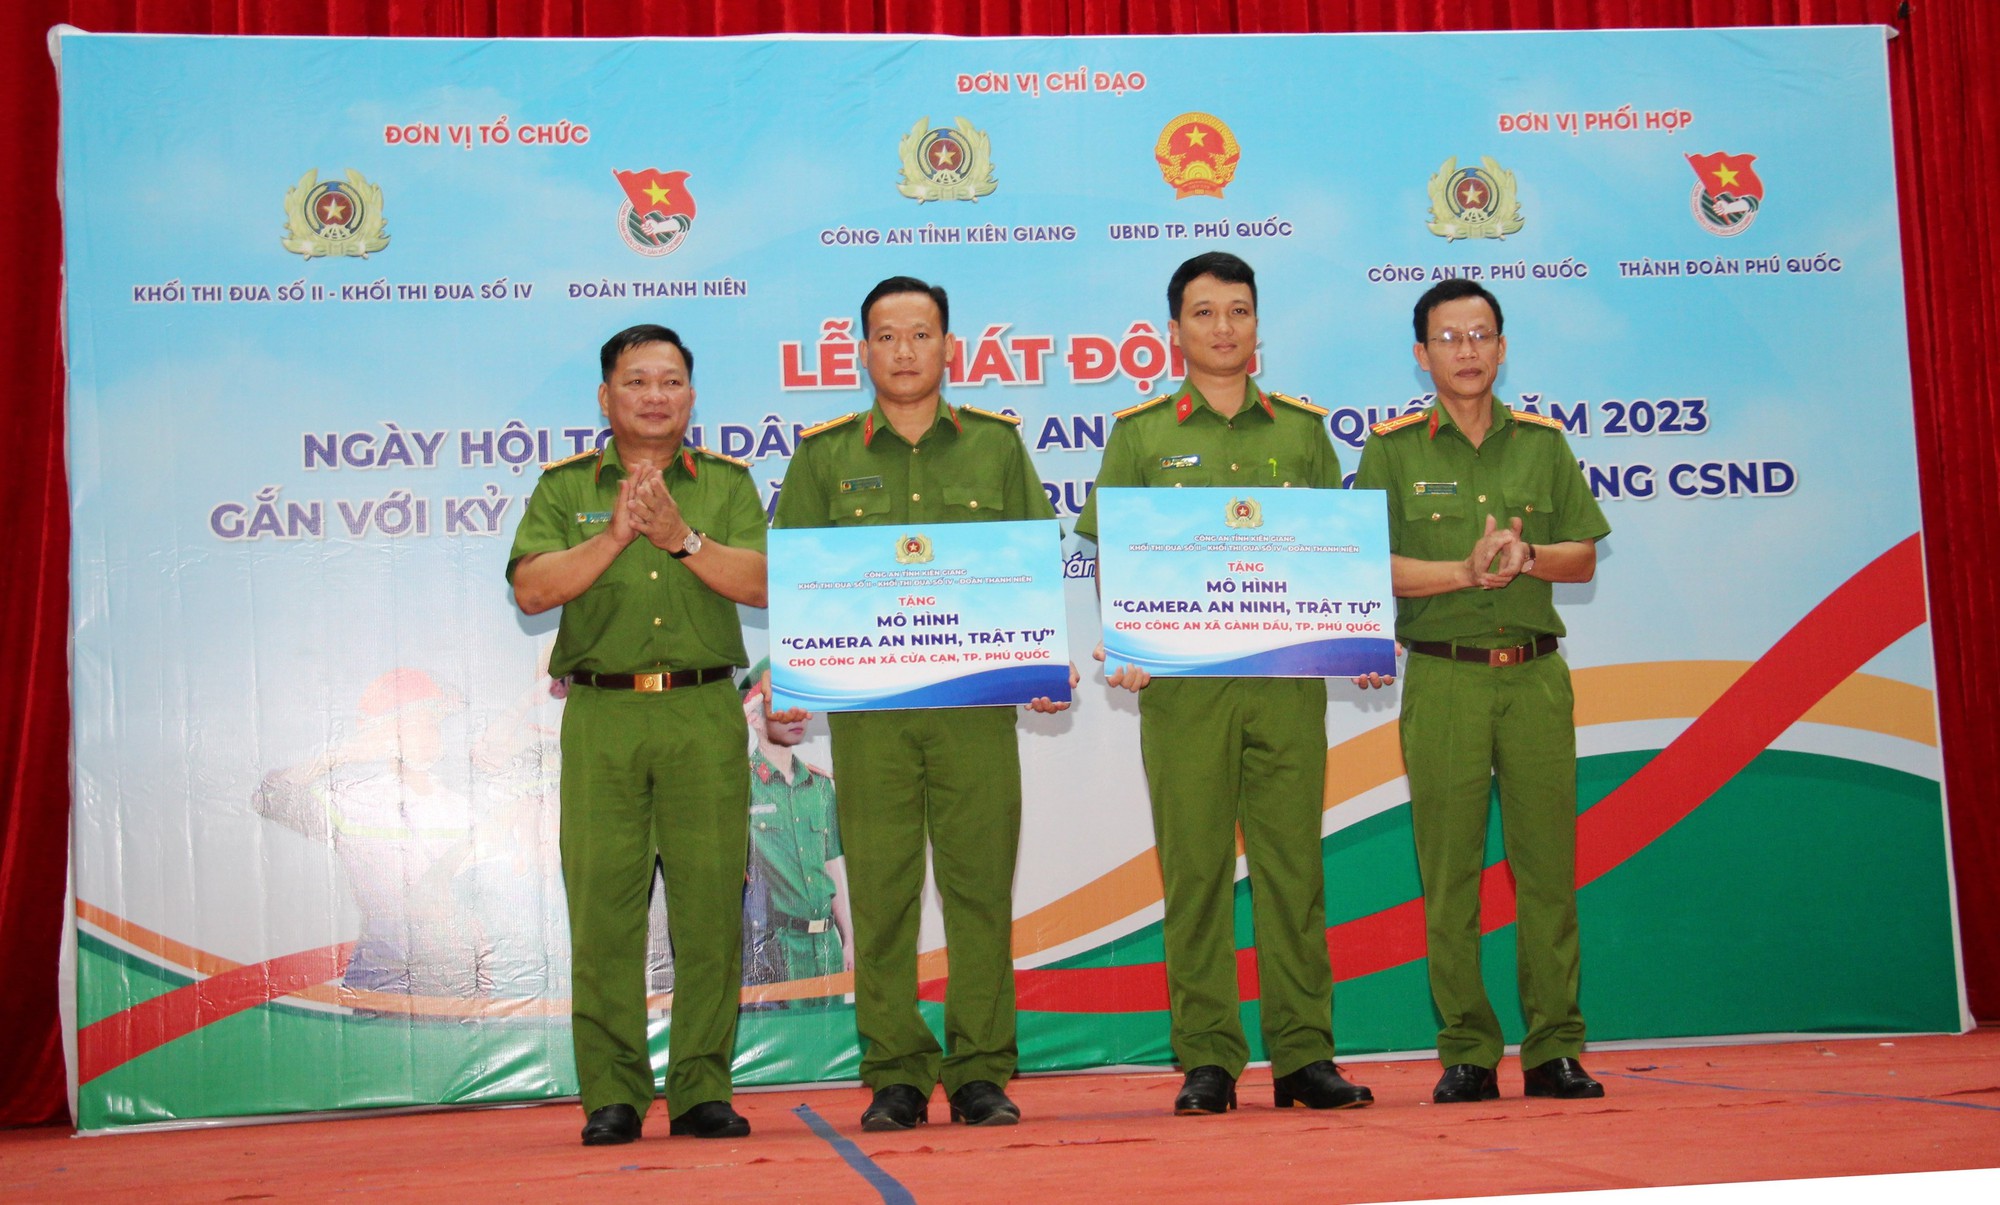 Công an tỉnh Kiên Giang tổ chức nhiều hoạt động tại Phú Quốc - Ảnh 7.